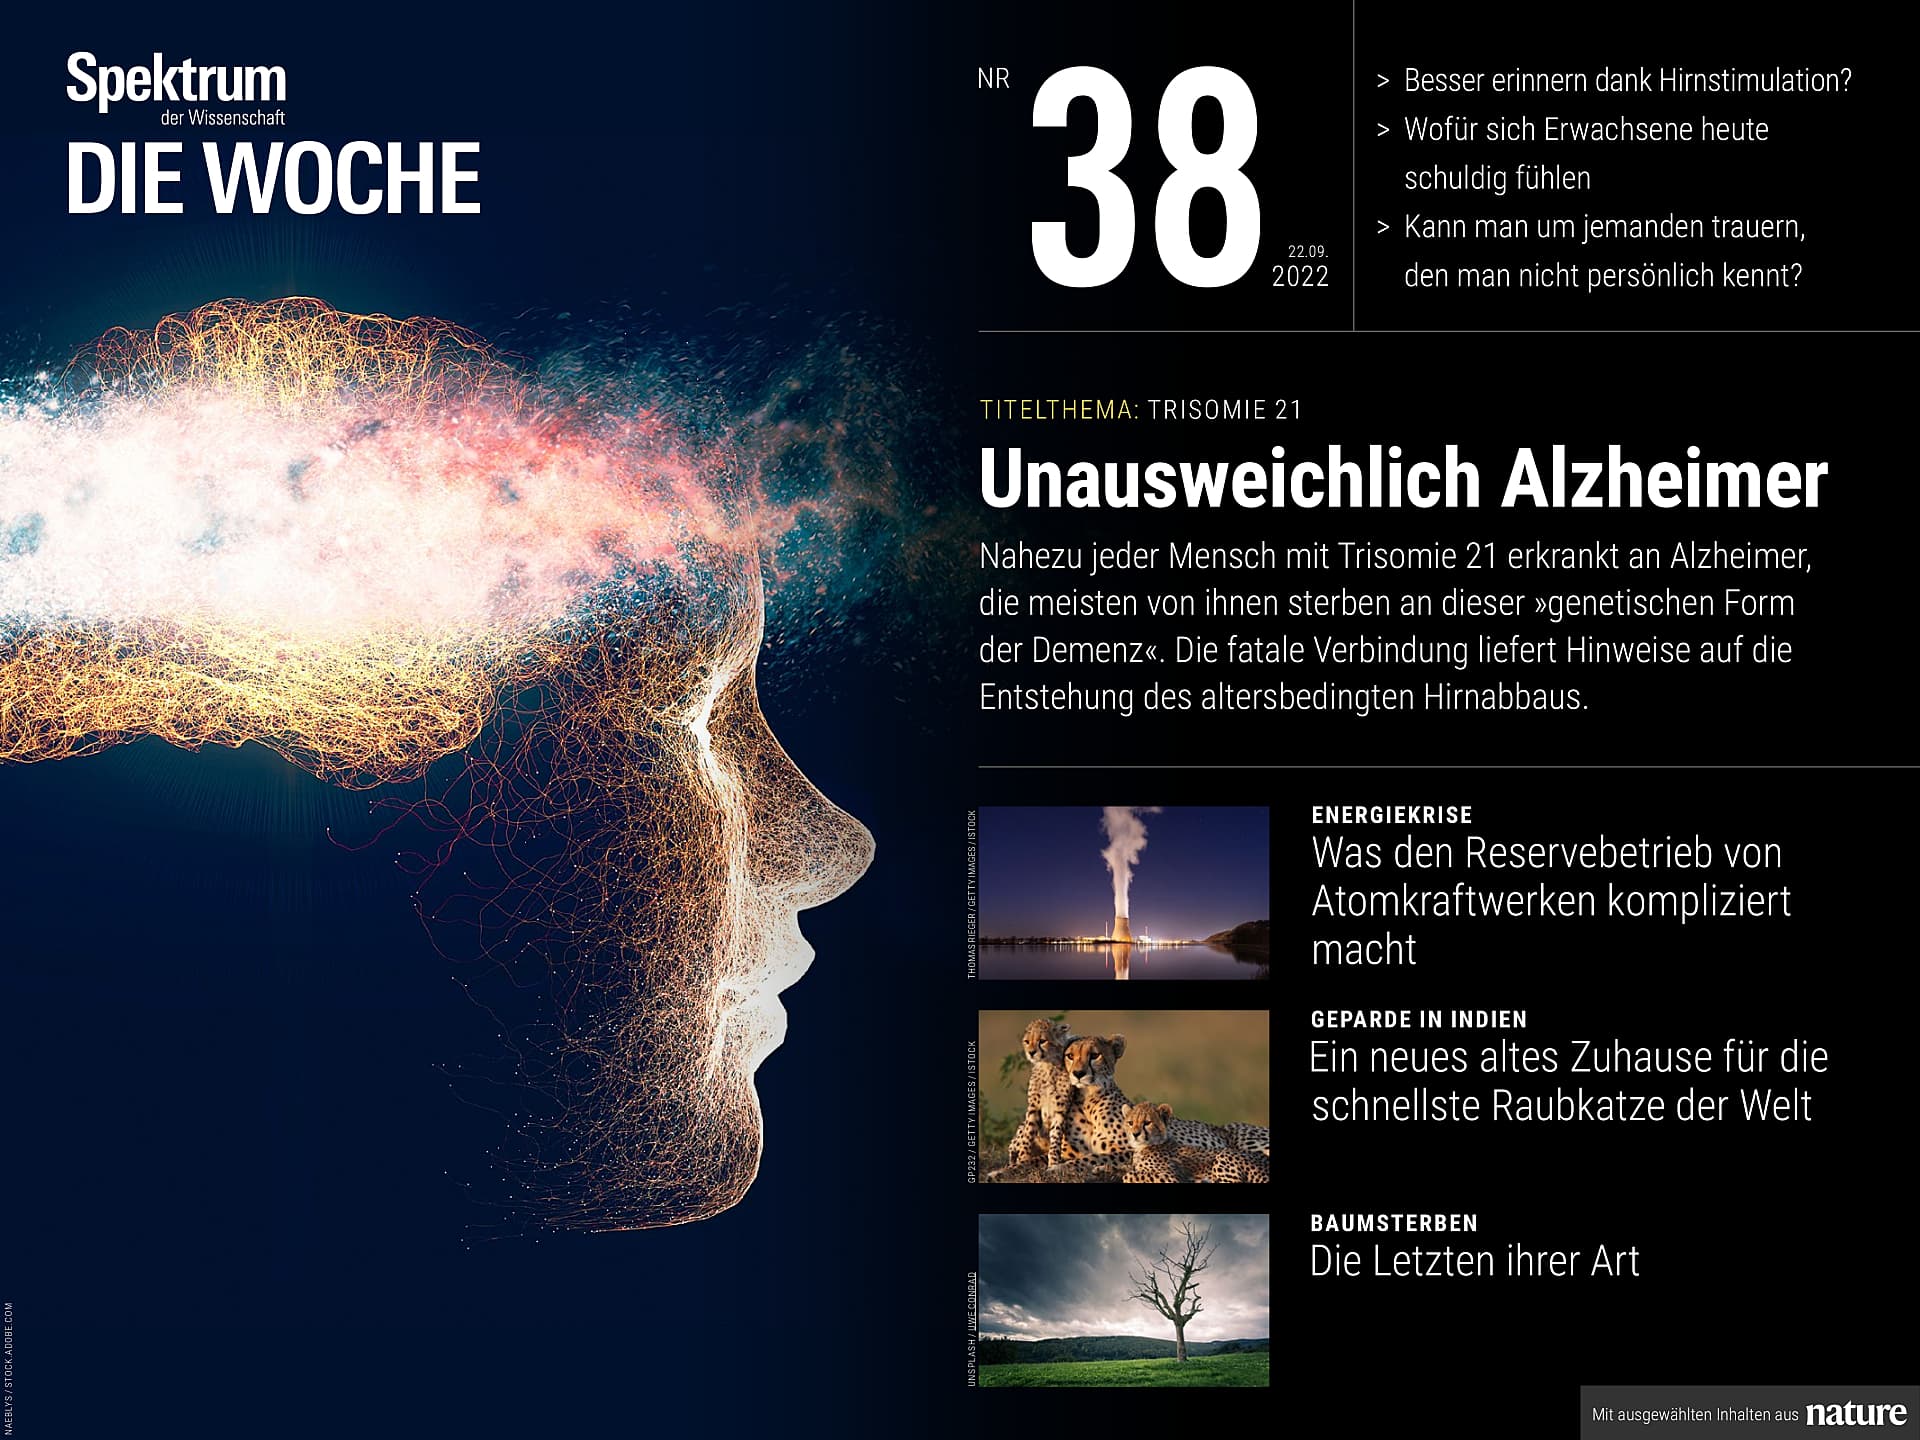 Trisomie 21 – Automatisch Alzheimer